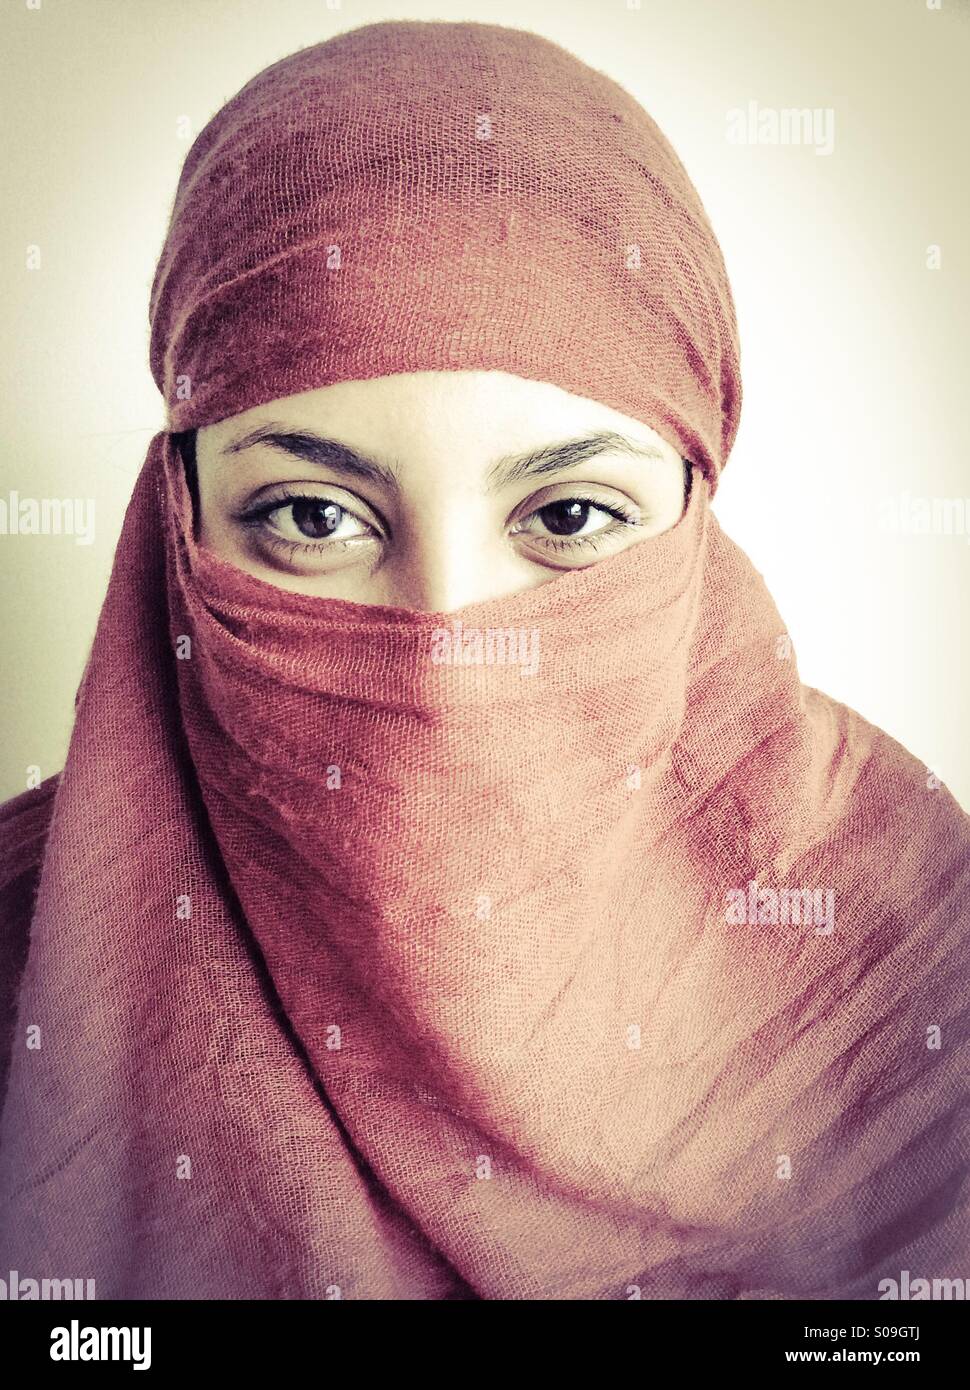 Arab ragazza sorridente con i suoi occhi. Foto Stock